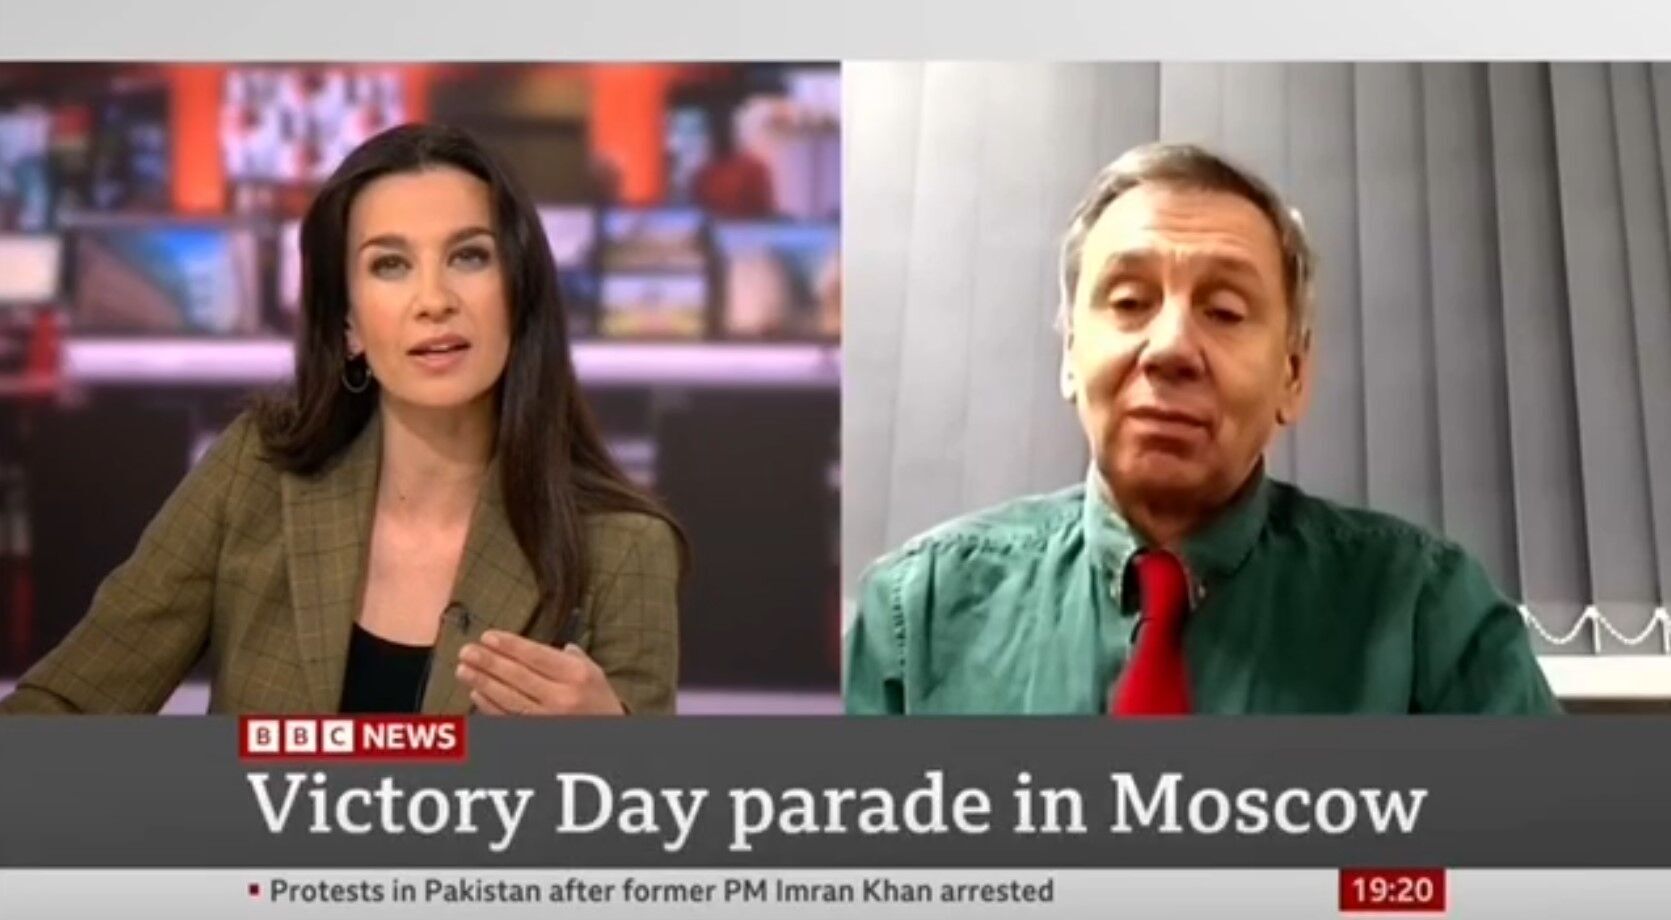 Російського пропагандиста Маркова "накрило" в ефірі британського ТБ після слів ведучої про Україну. Відео